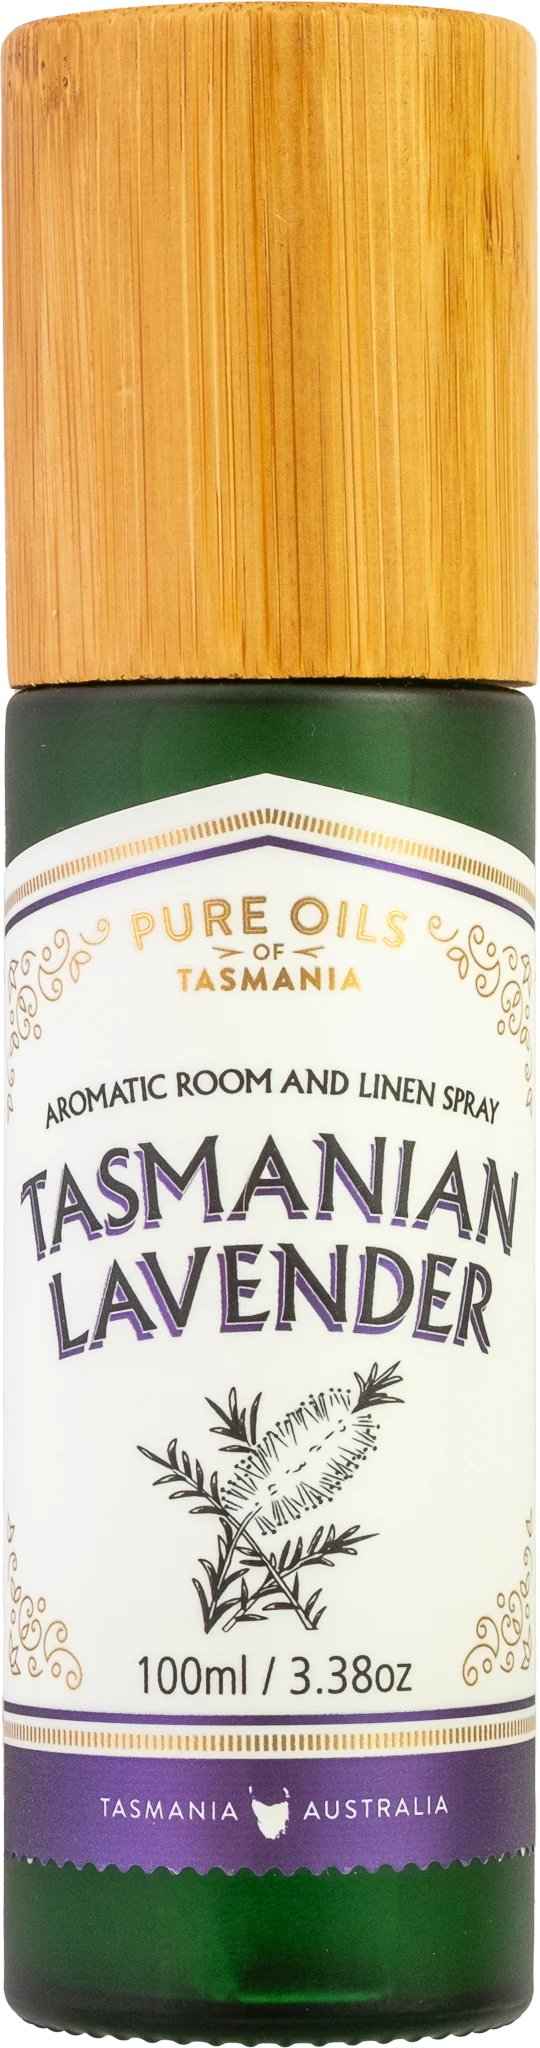 Tasmanian Lavender Aromatic Room & Linen Spray - Pure Oils of Tasmania Body pure oils tasmania 